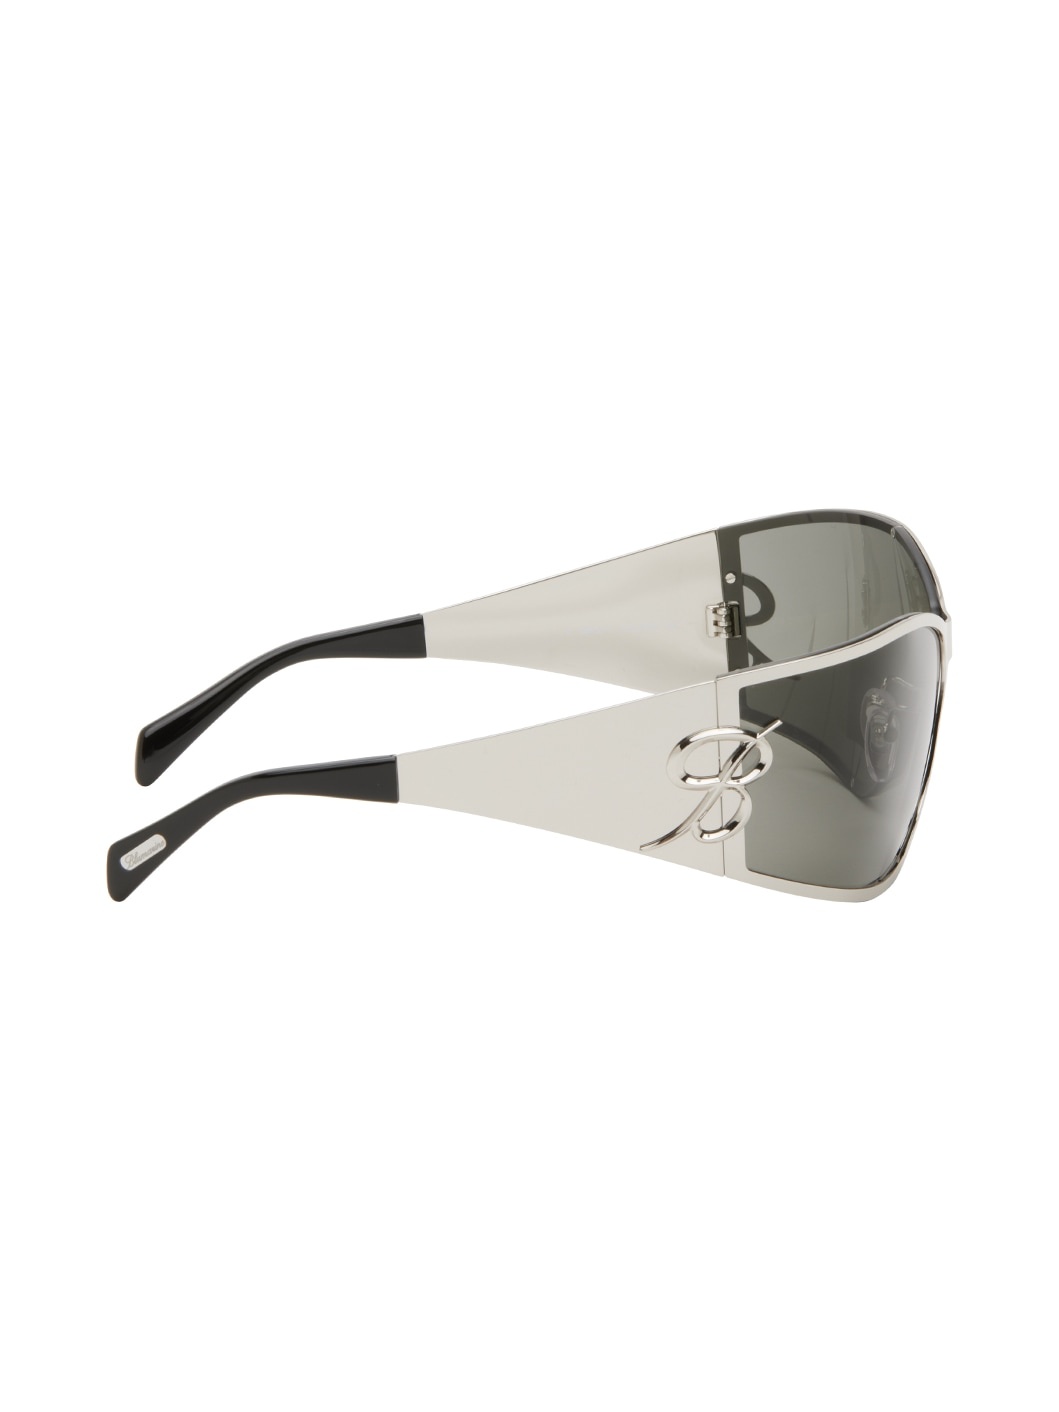 Silver Metal Wraparound Sunglasses - 2